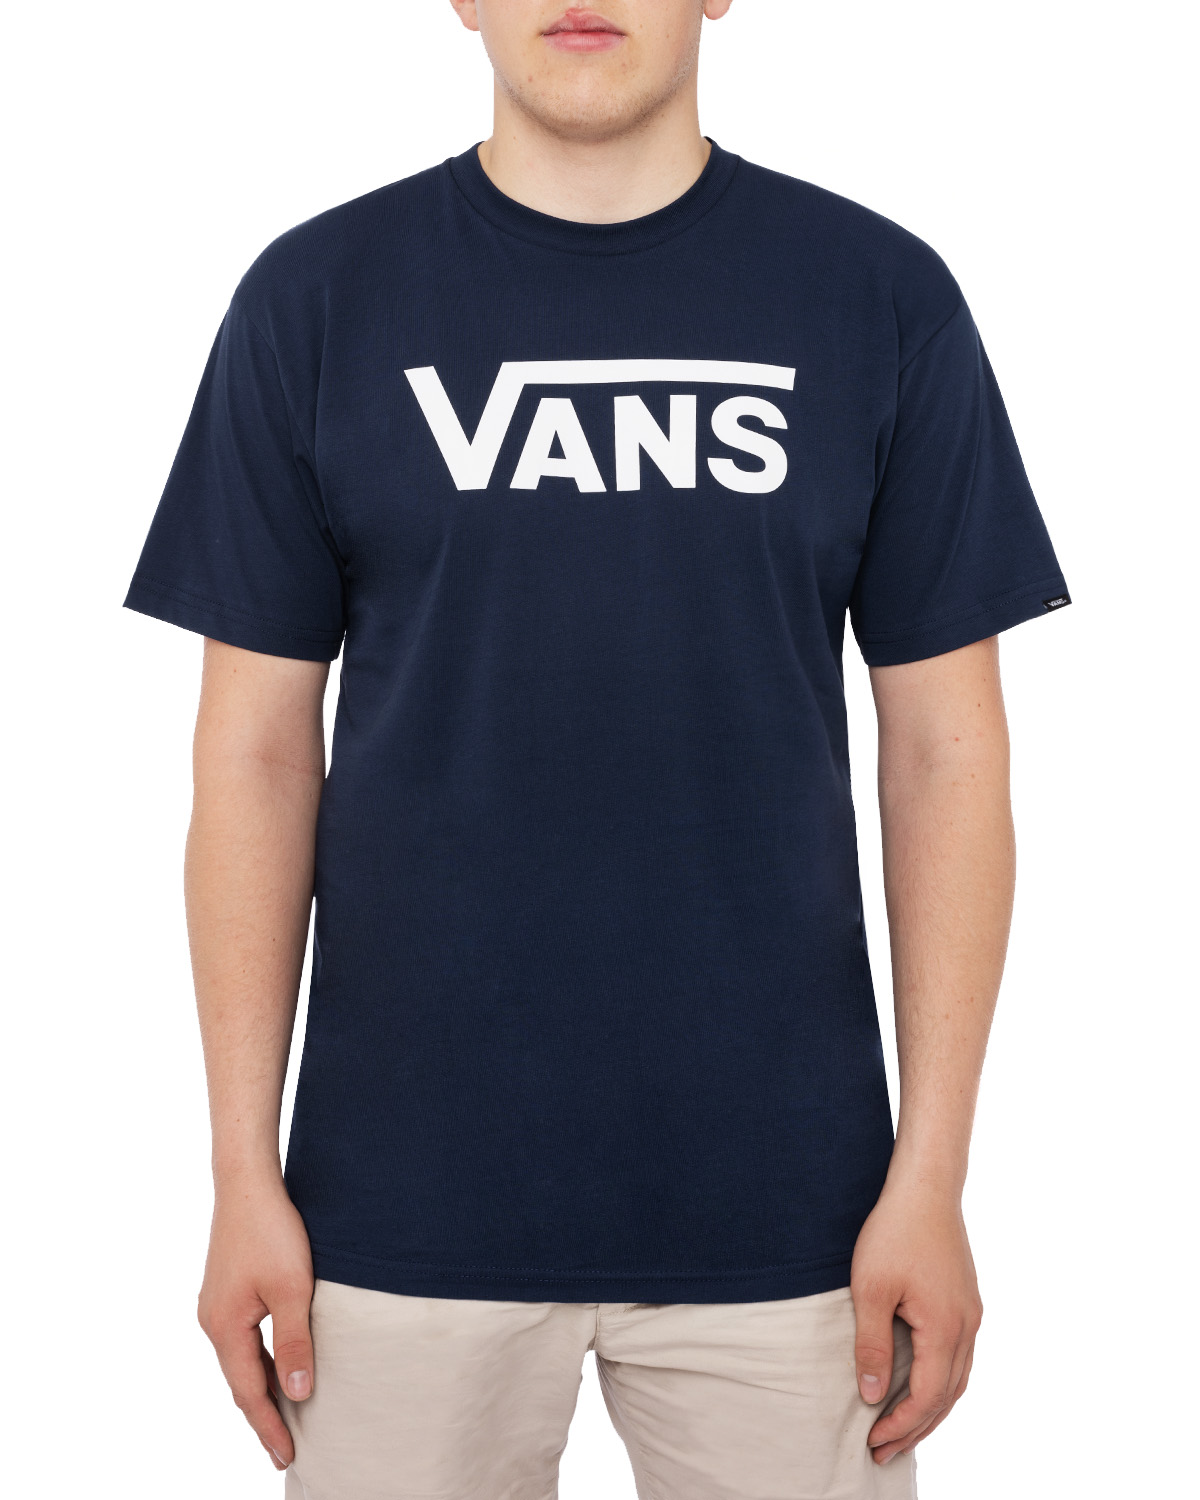 tilgive at føre investering Vans Vans Classic T-Shirt Dress Blues / White - Ensfarvede t-shirts På  Zoovillage